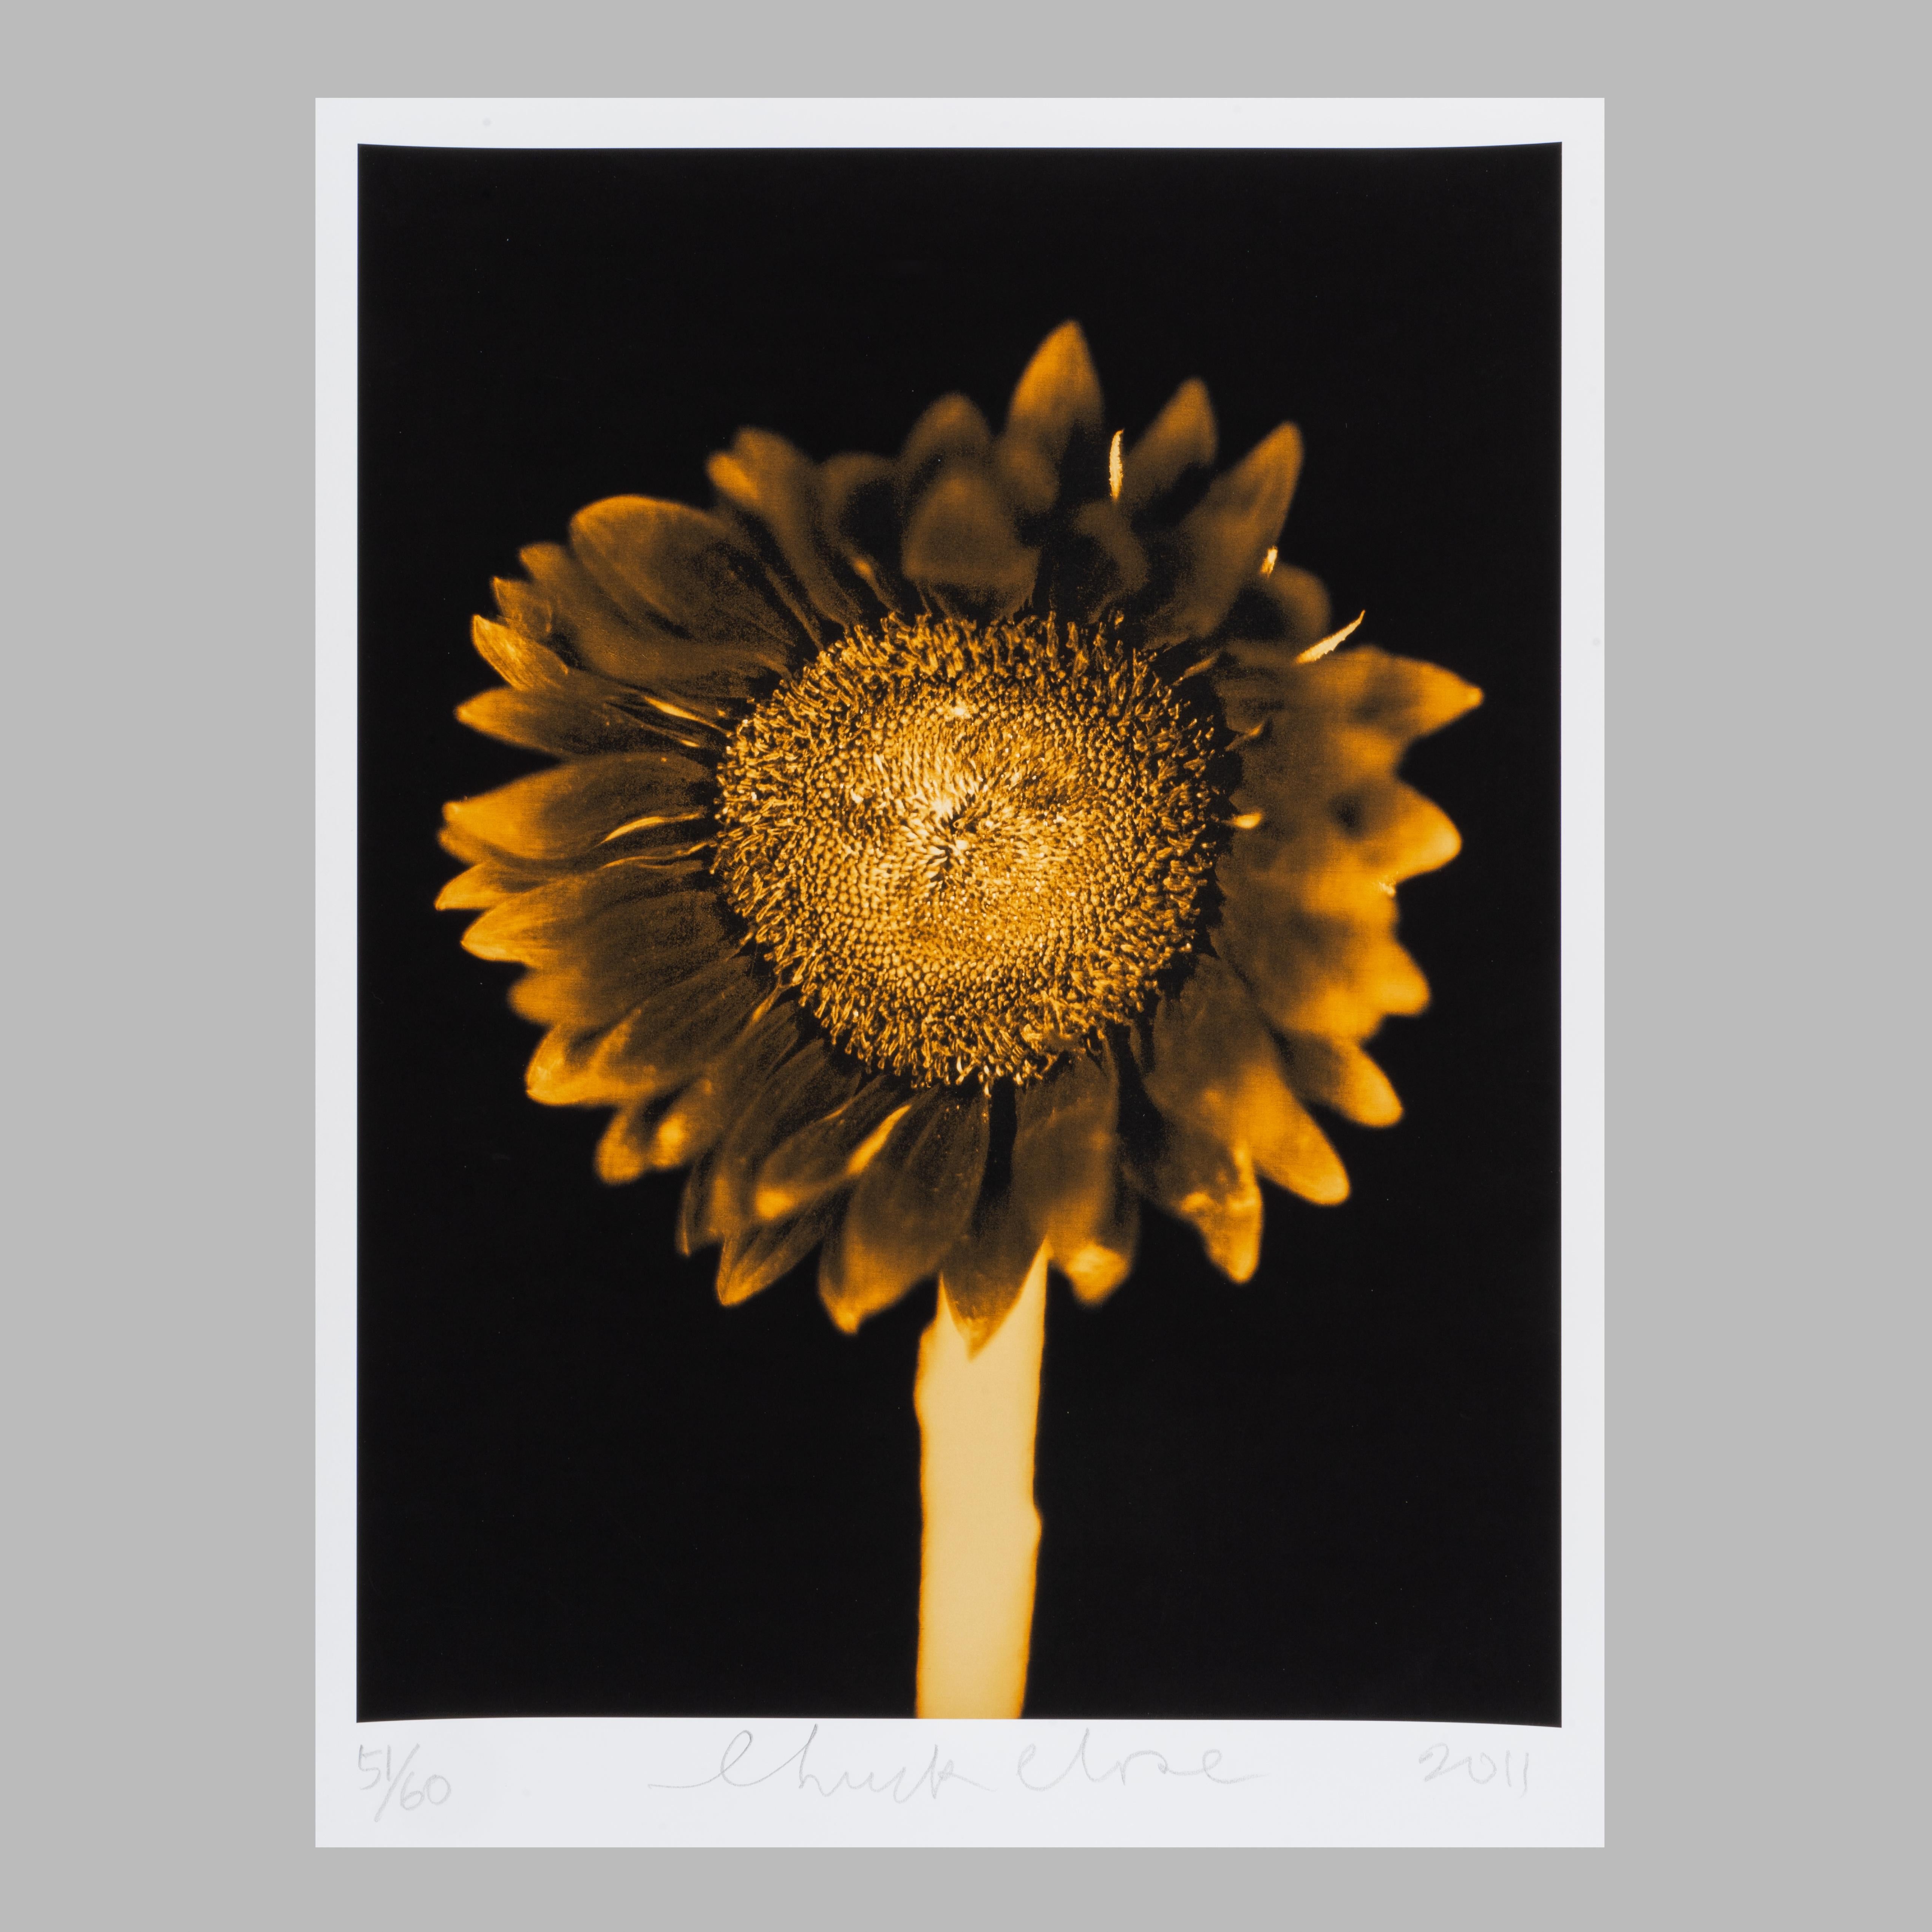 Chuck Close
Ohne Titel (Sonnenblume), 2011
Pigmentdruck
Auflage von 60 Stück 
52 x 39 cm (20,4 x 15,3 Zoll)
Signiert, nummeriert und datiert mit Bleistift auf der Vorderseite
Begleitet von einem Echtheitszertifikat
In neuwertigem Zustand, wie vom